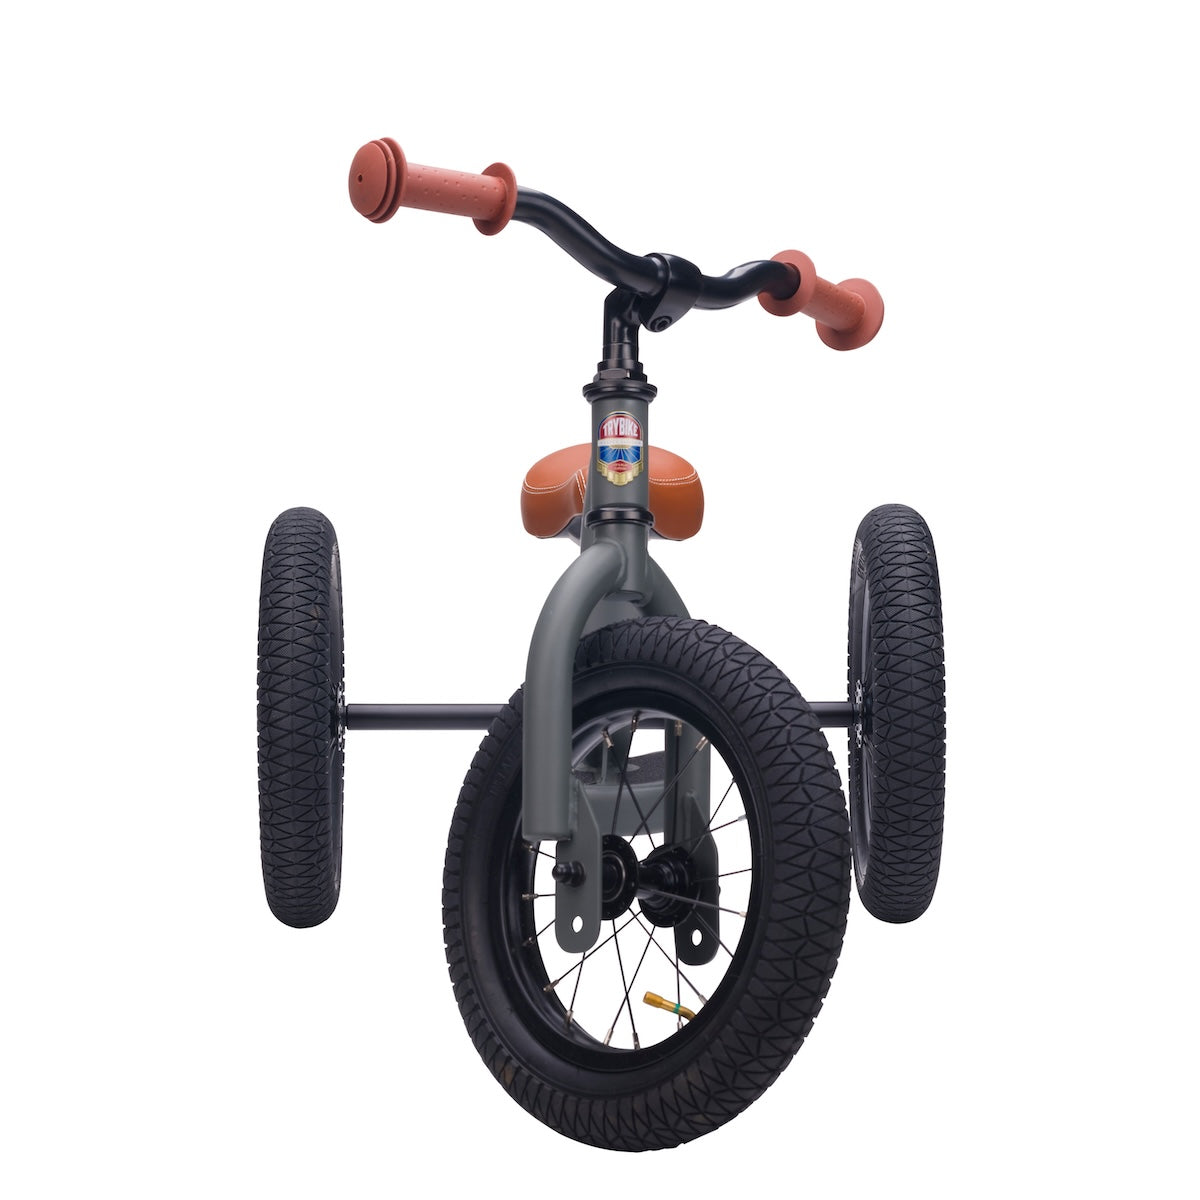 Bestel de Trybike steel 2-in-1 driewieler in de kleur mat grijs en laat je kindje het plezier van fietsen ontdekken! Eenvoudig om te bouwen van een loopfiets naar een echte fiets. Duurzaam en veilig. VanZus